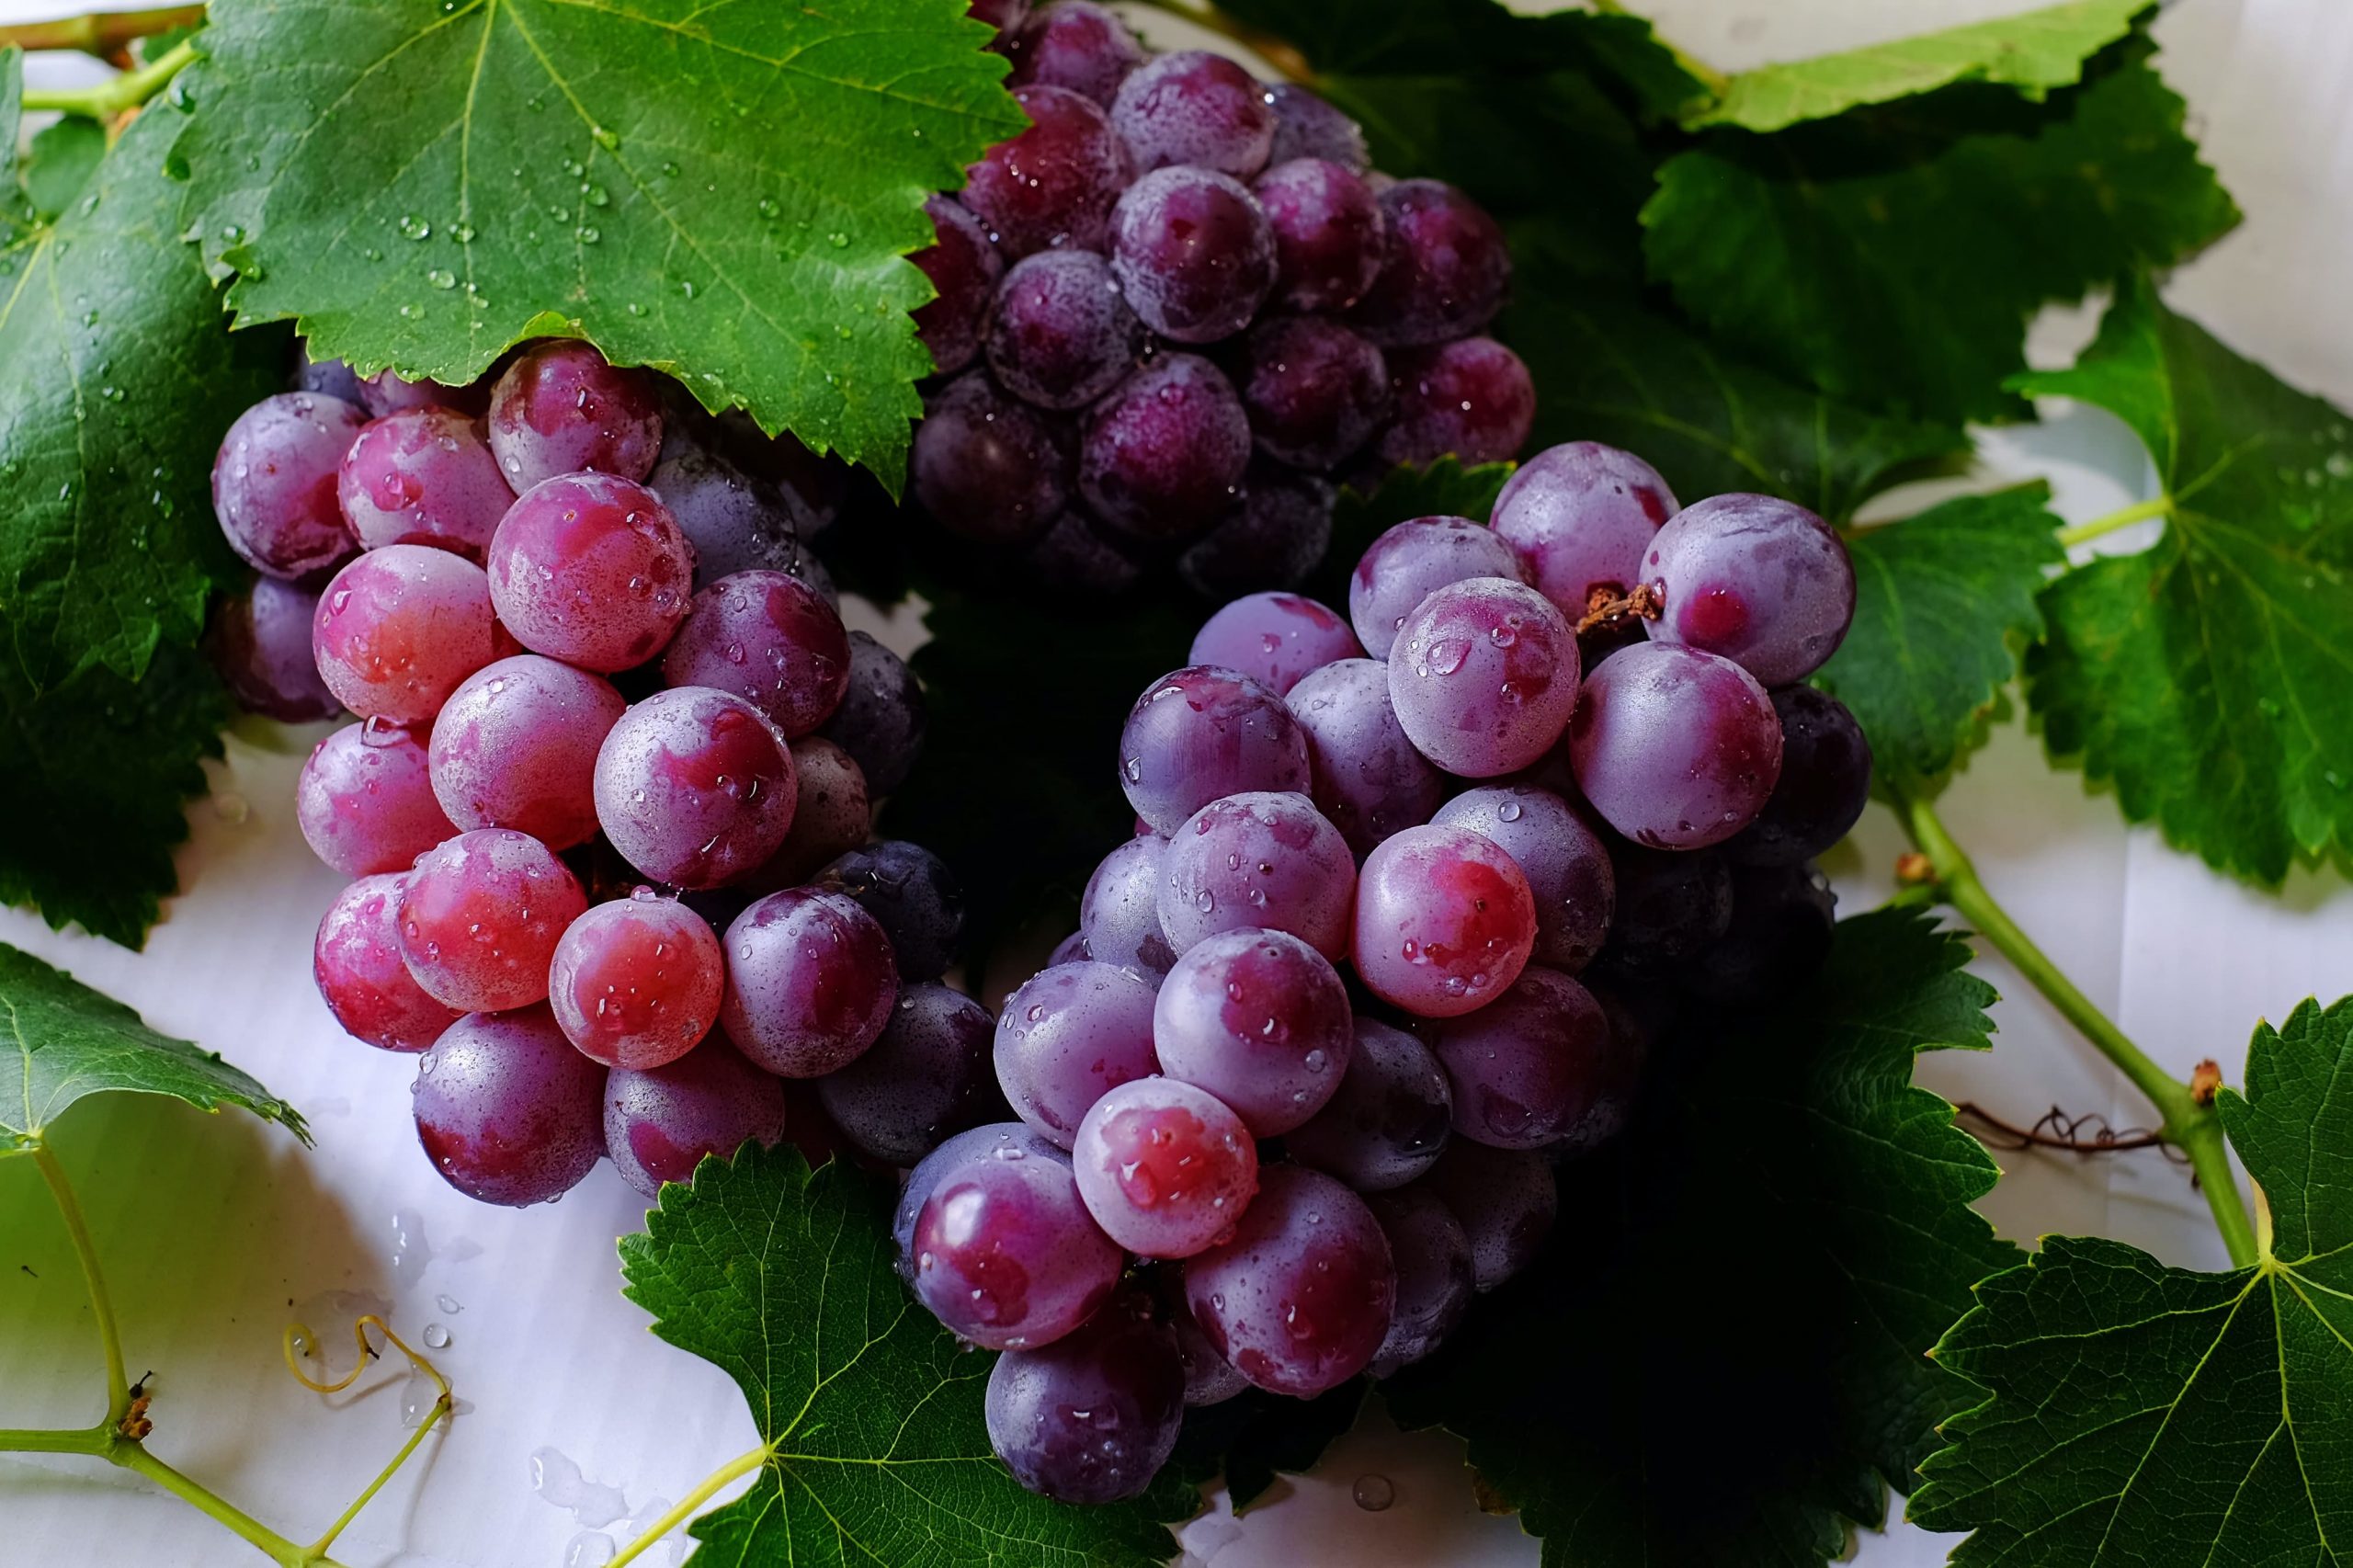 Óleo de semente de uva: o que é, para que serve e onde comprar